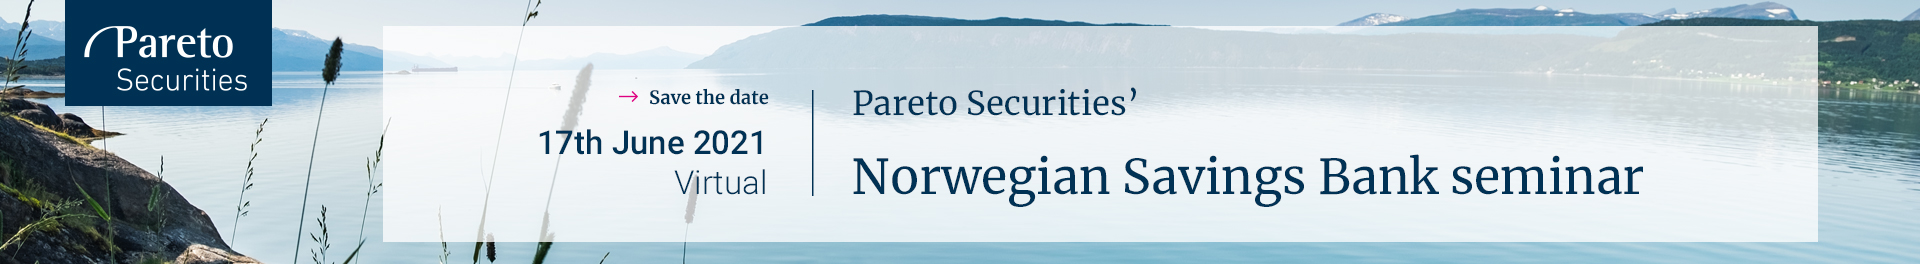 Header image for Pareto Securities' Norwegian Savings Bank seminar